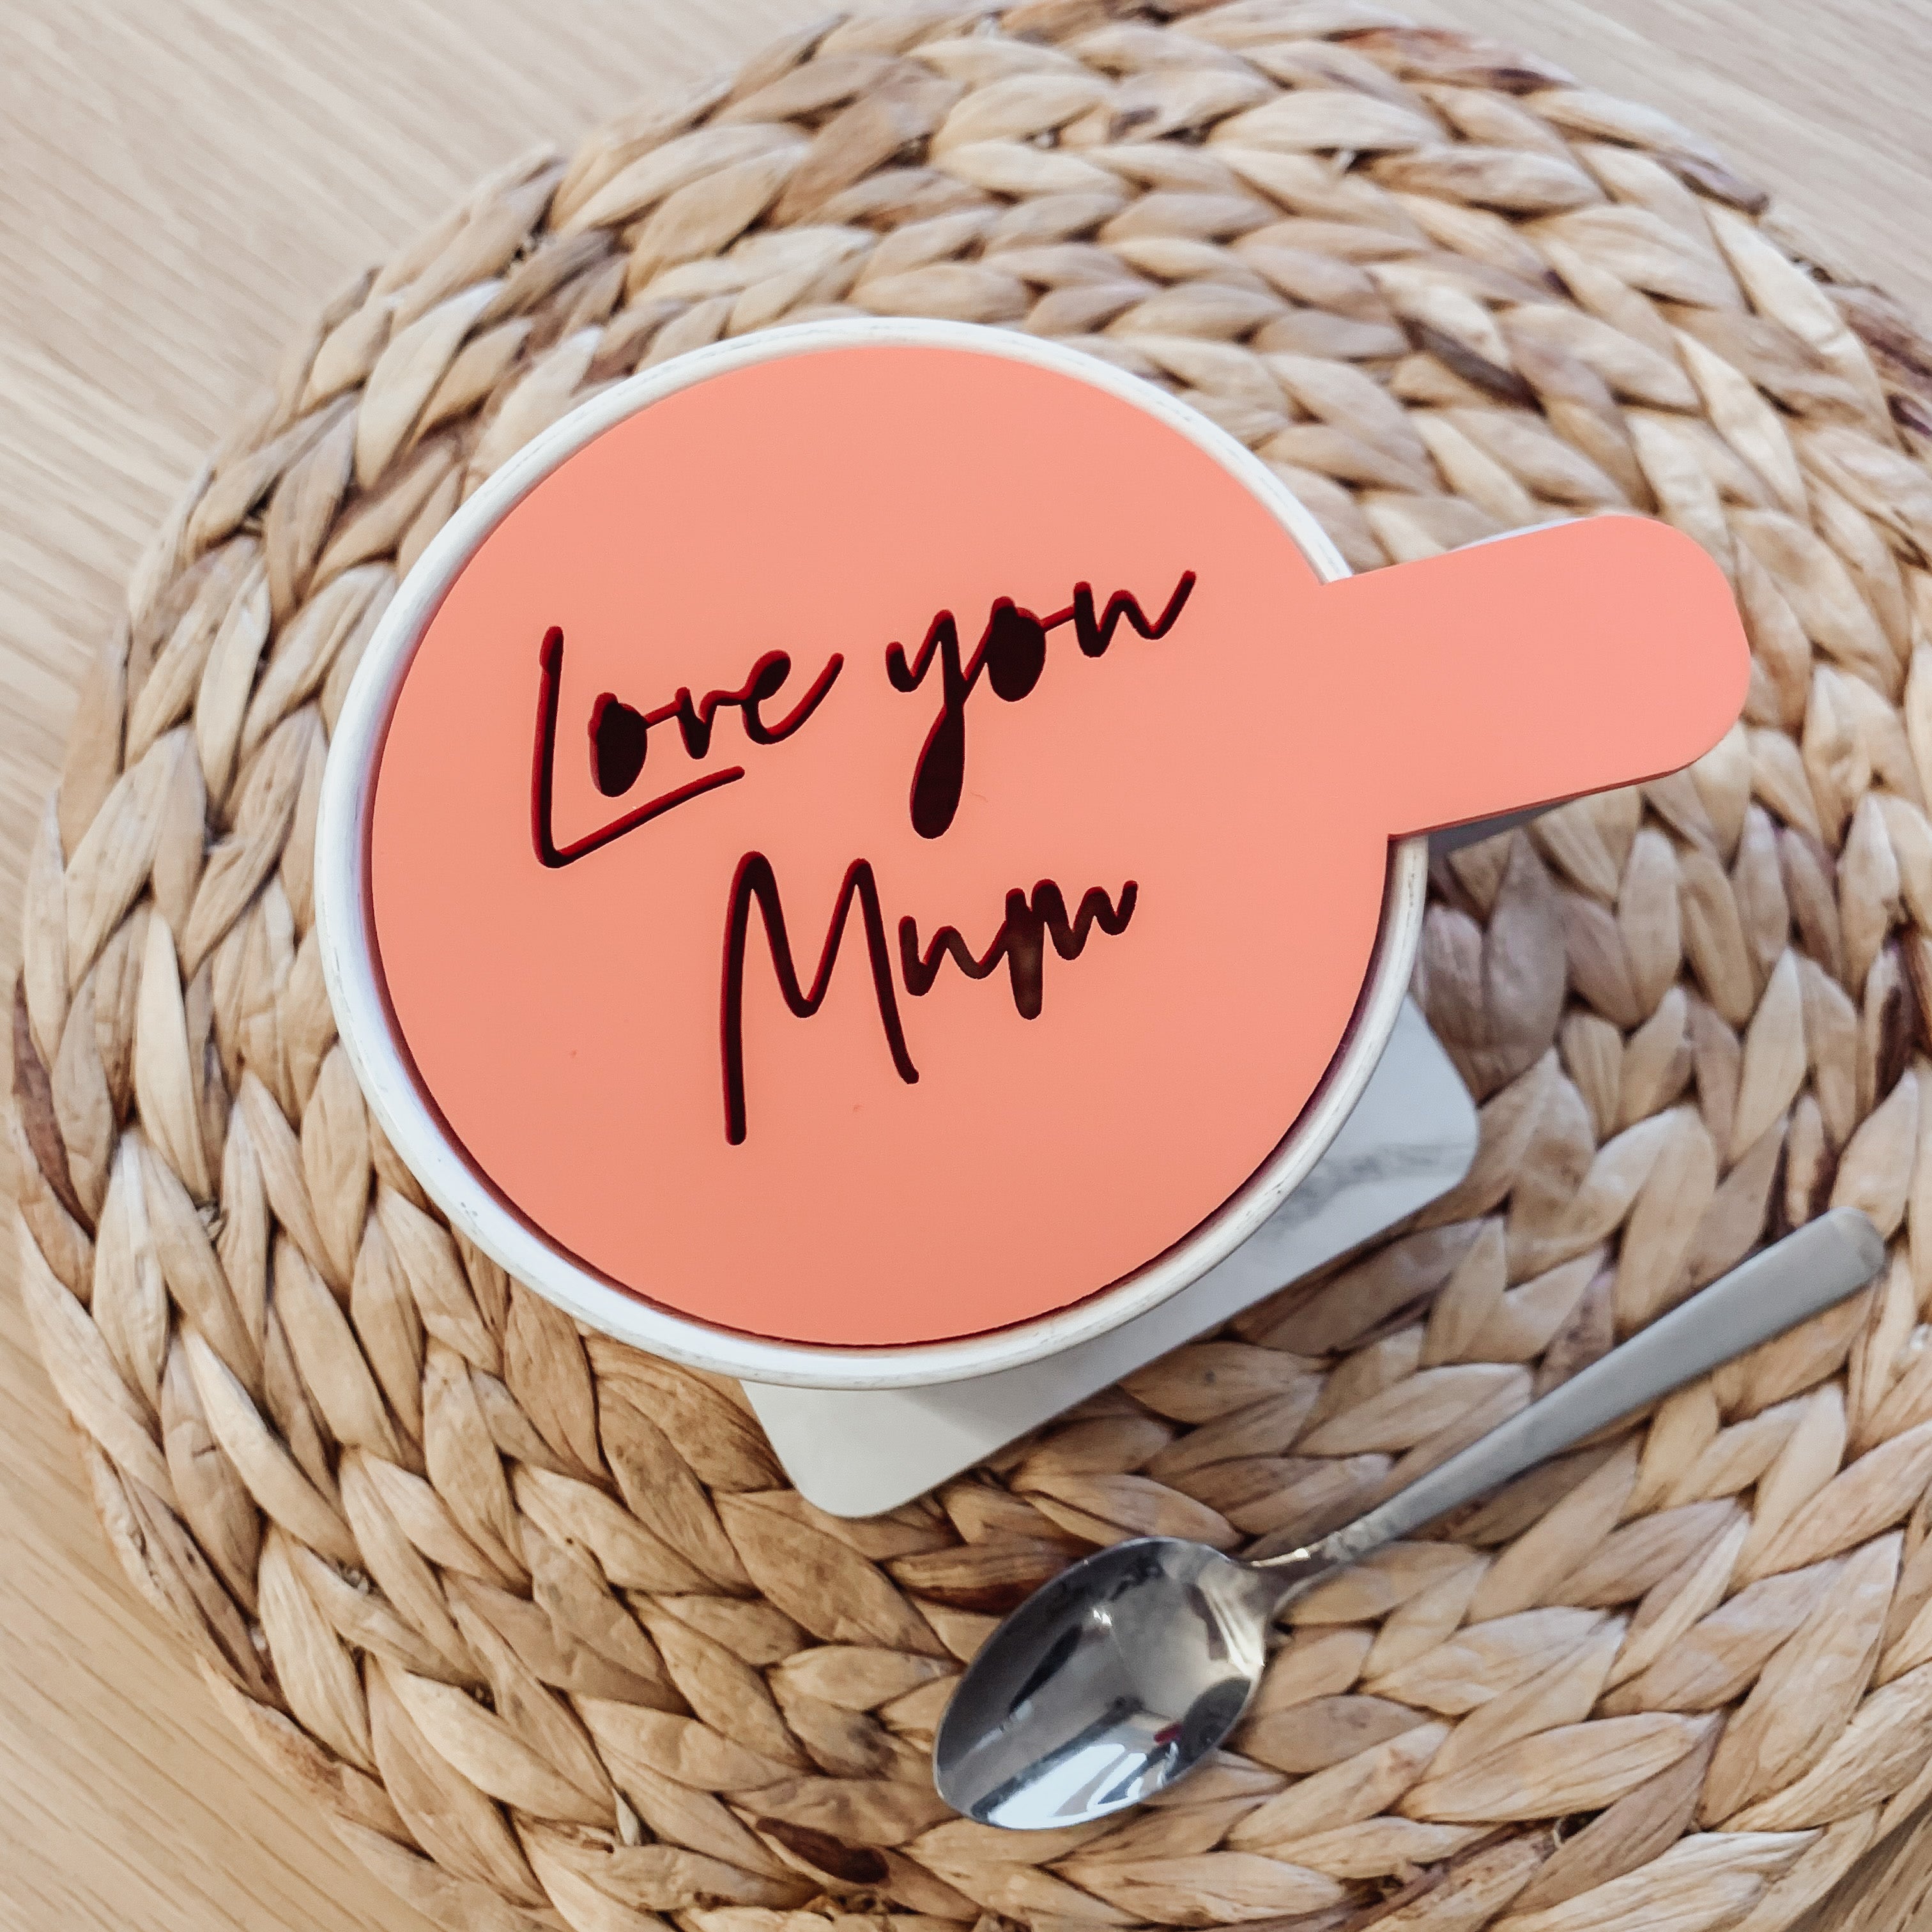 Love You Mum Stencil Present